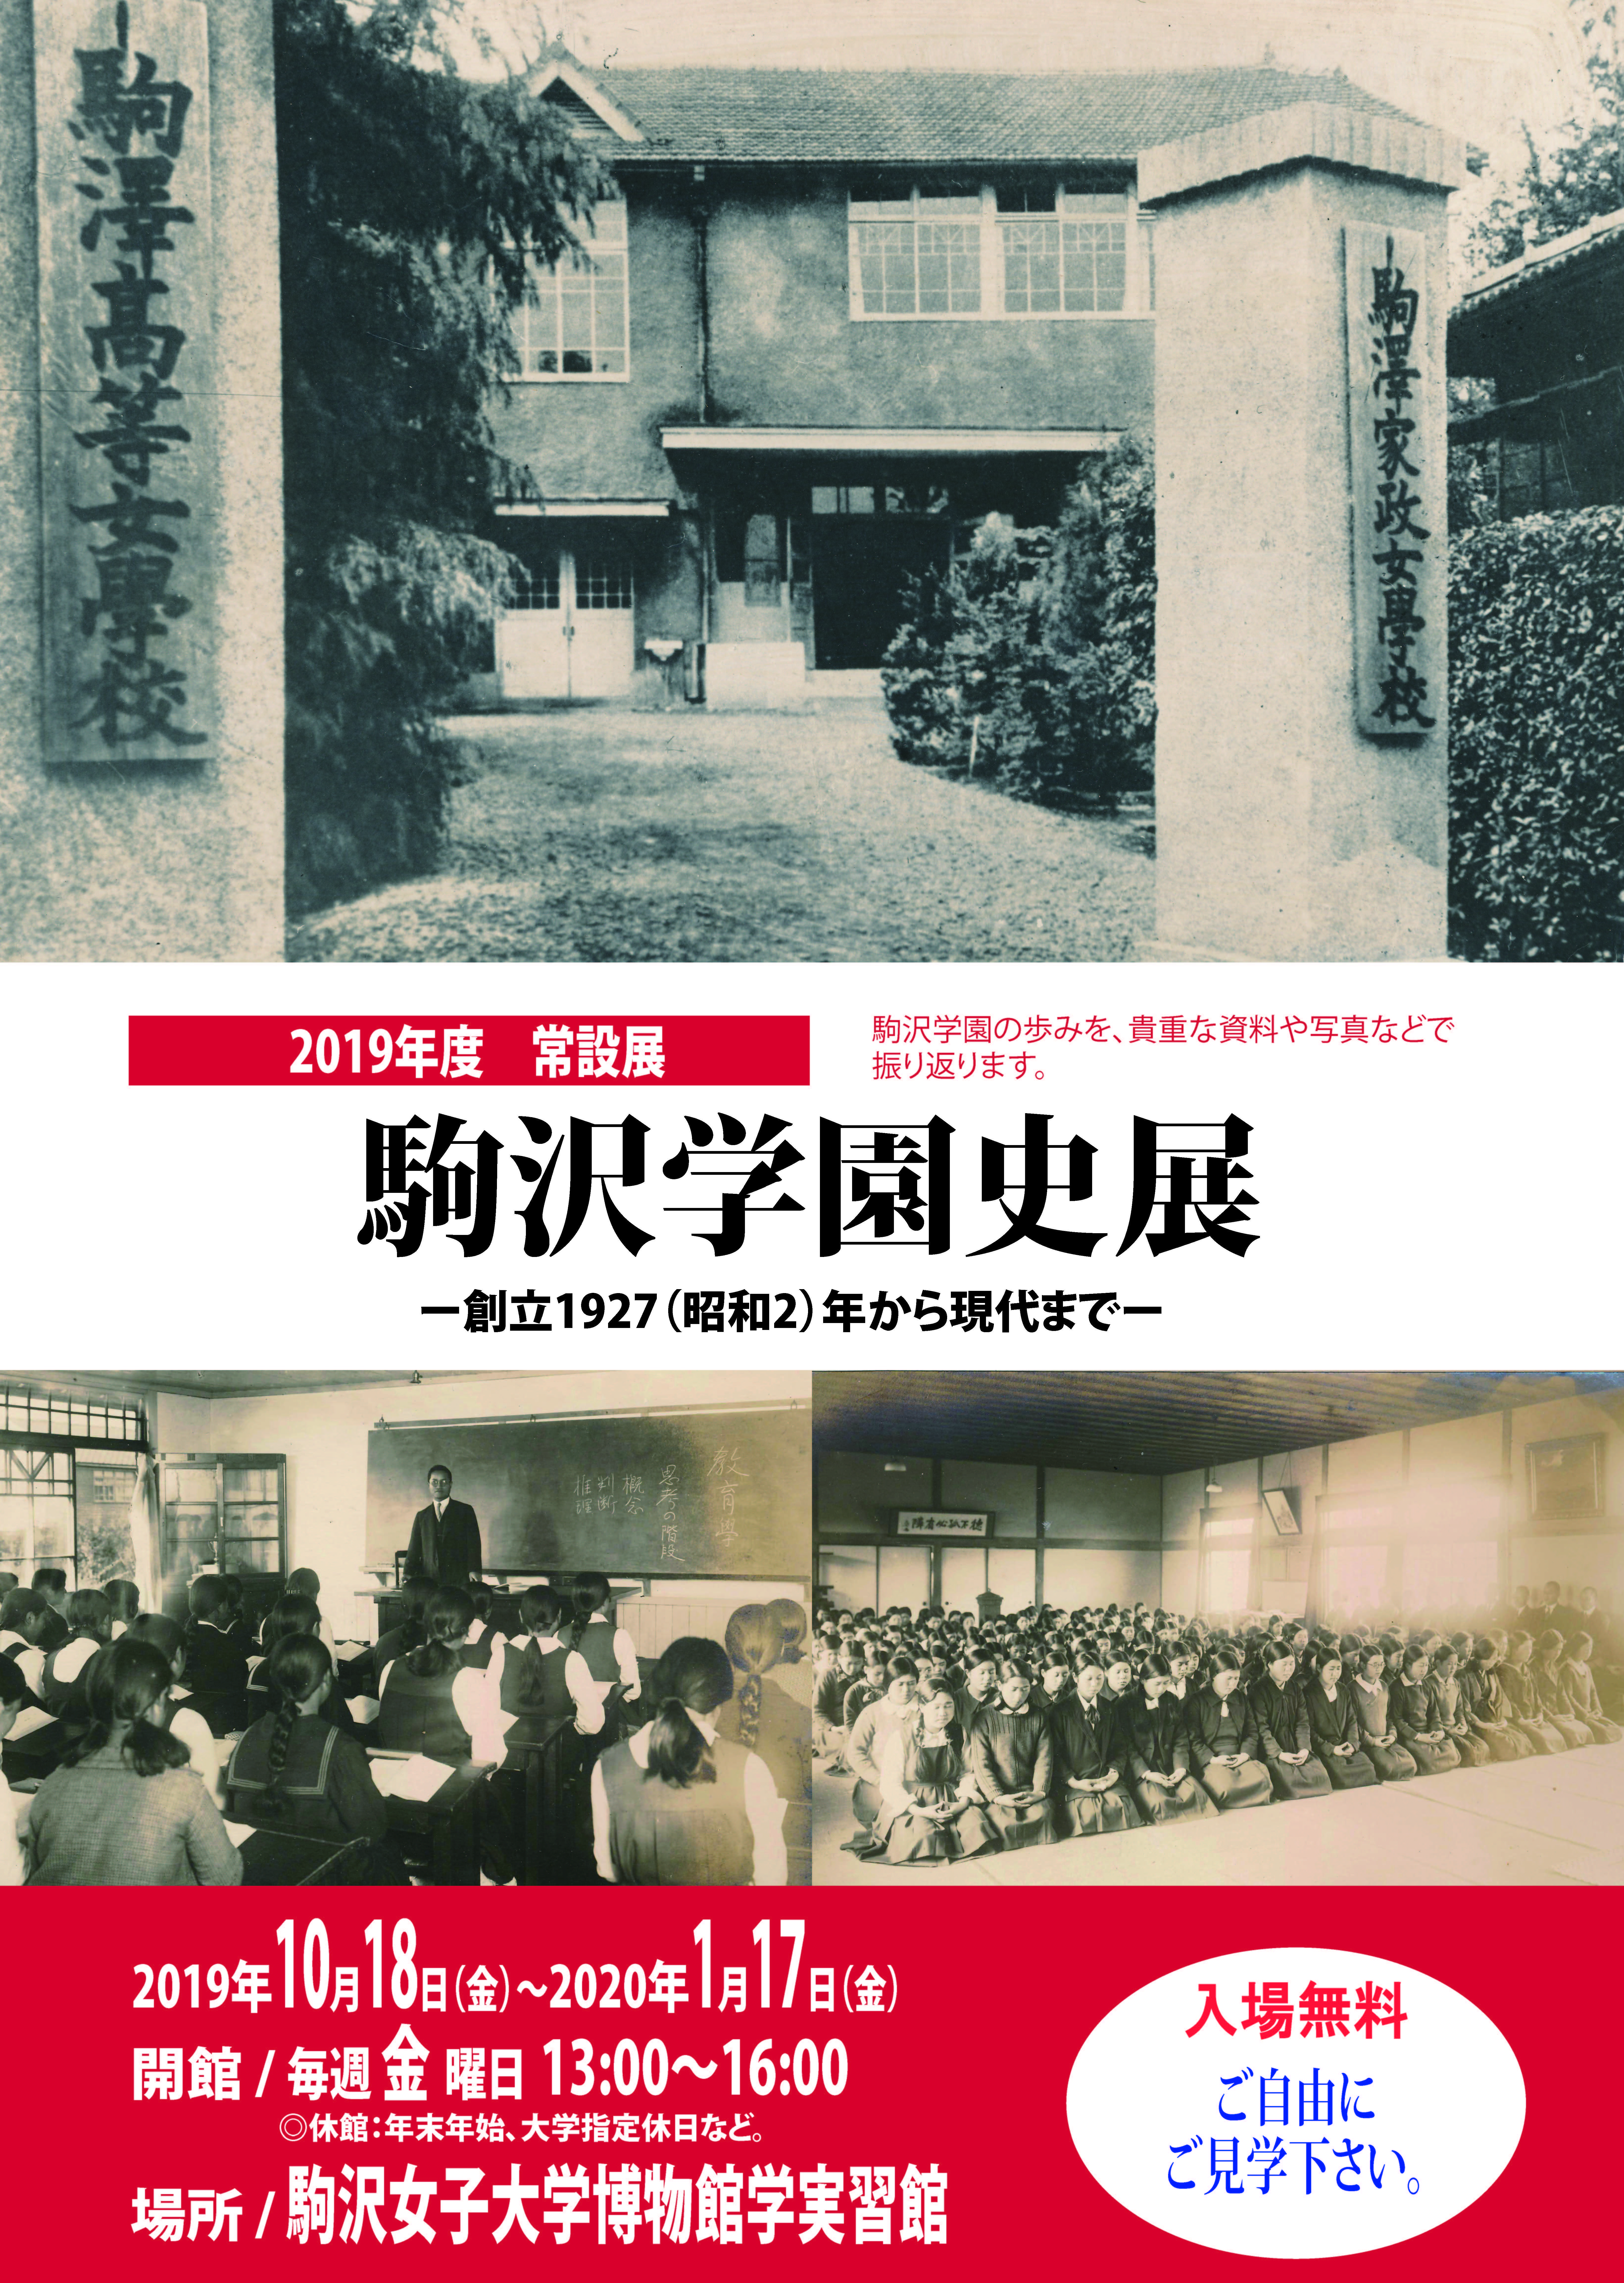 駒沢女子大学が博物館学実習館2019年度常設展「駒沢学園史展 -- 創立1927（昭和2）年から現代まで -- 」を開催中 -- 2020年1月17日まで